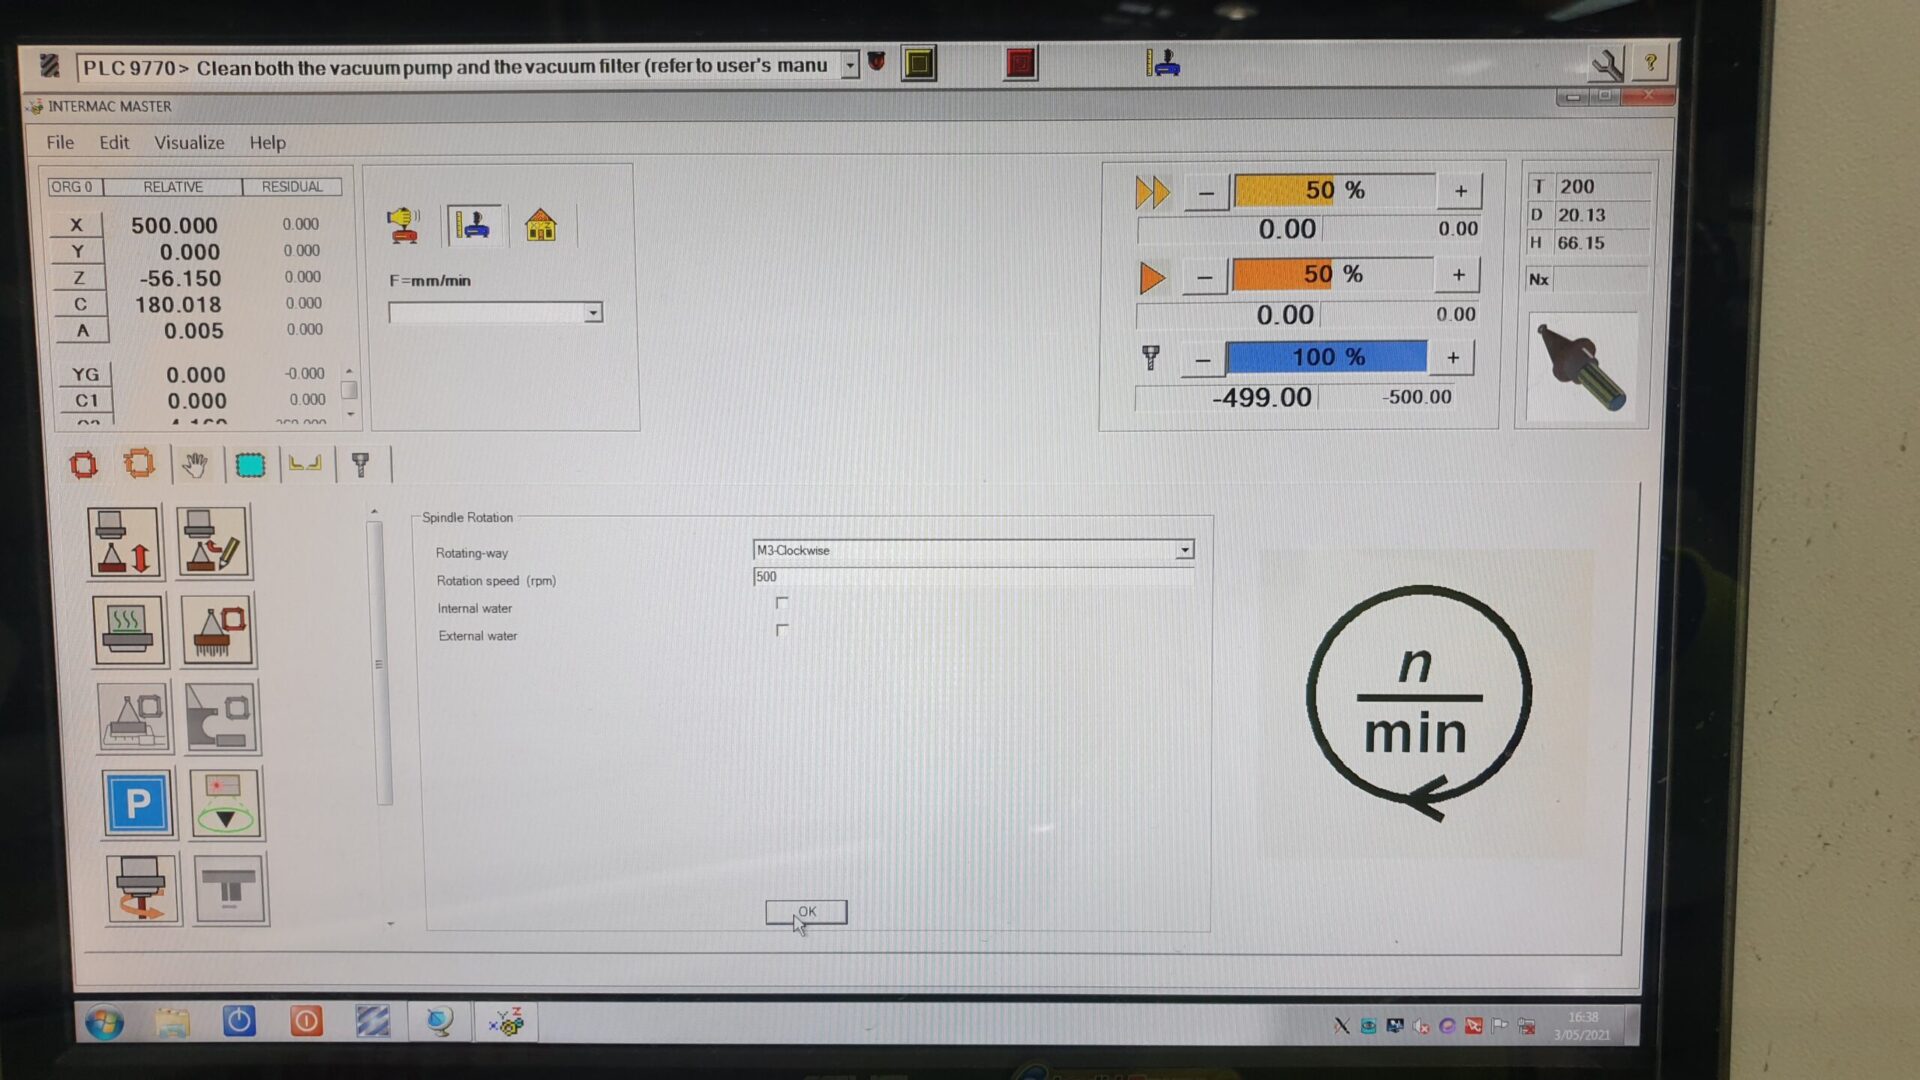 INTERMAC Master WRT screen in 500 RPM